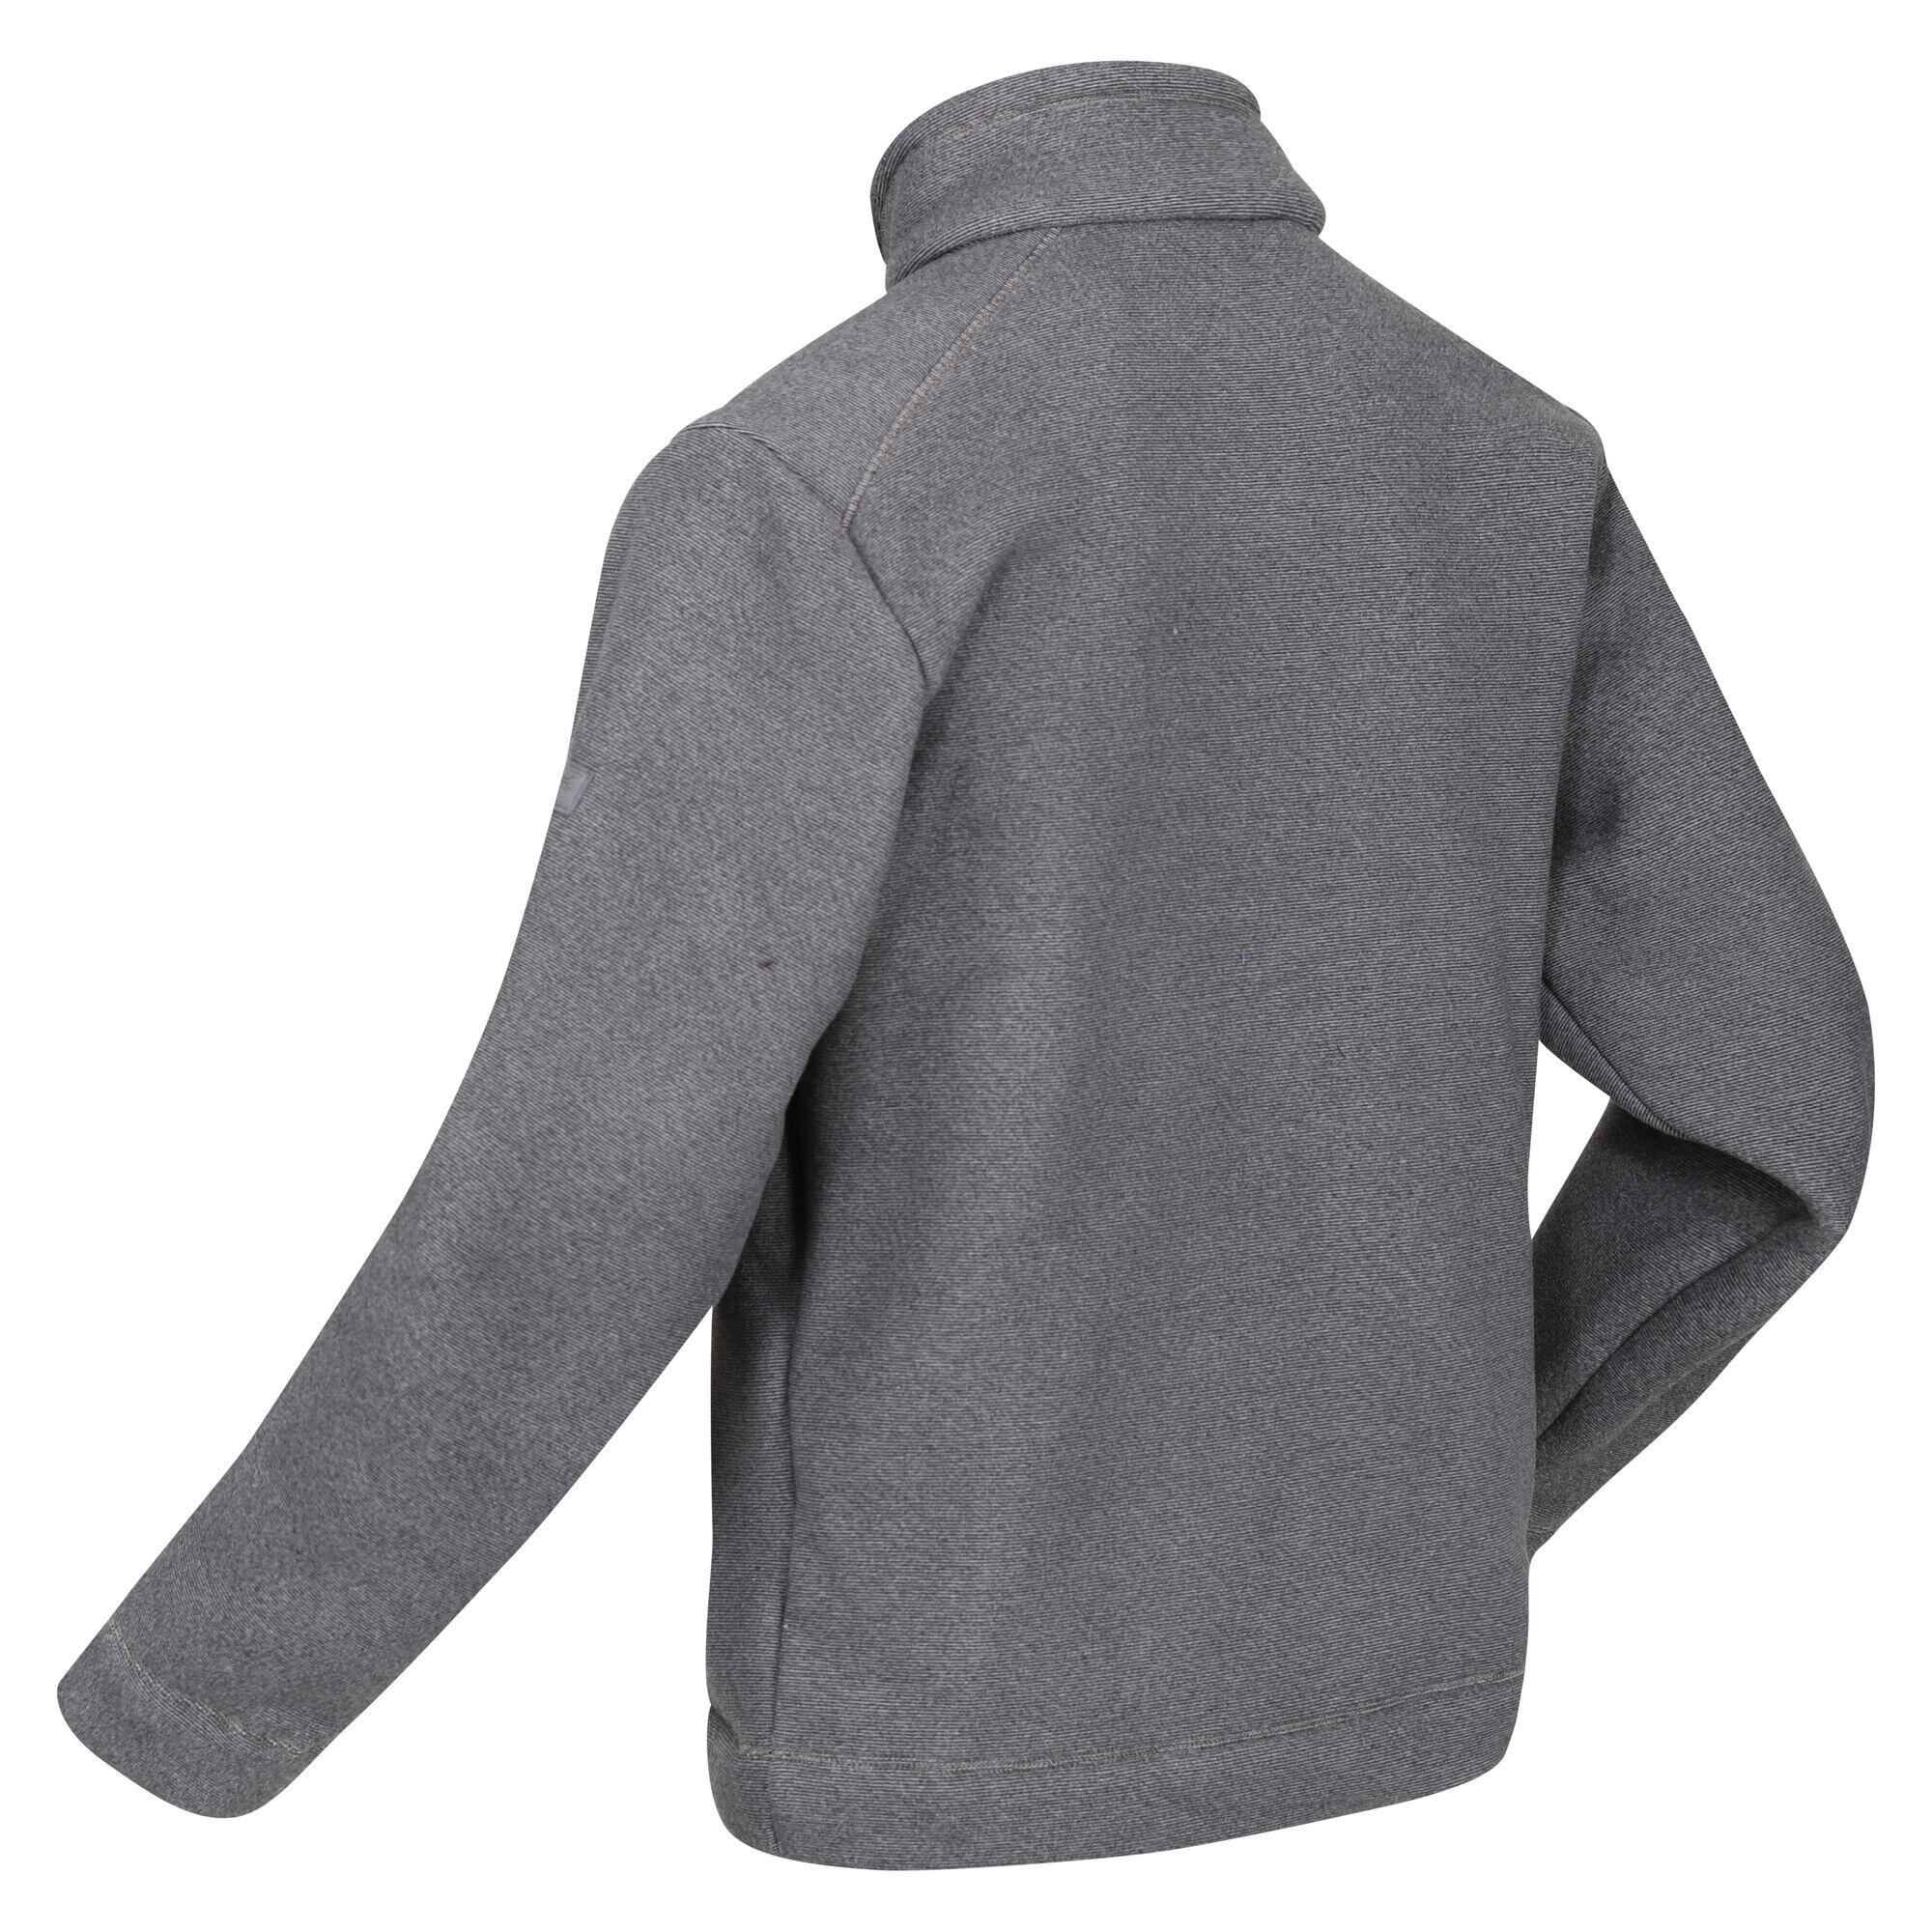 Mens Garrian II Full Zip Fleece Jacket (Storm Grey/Black) 4/5